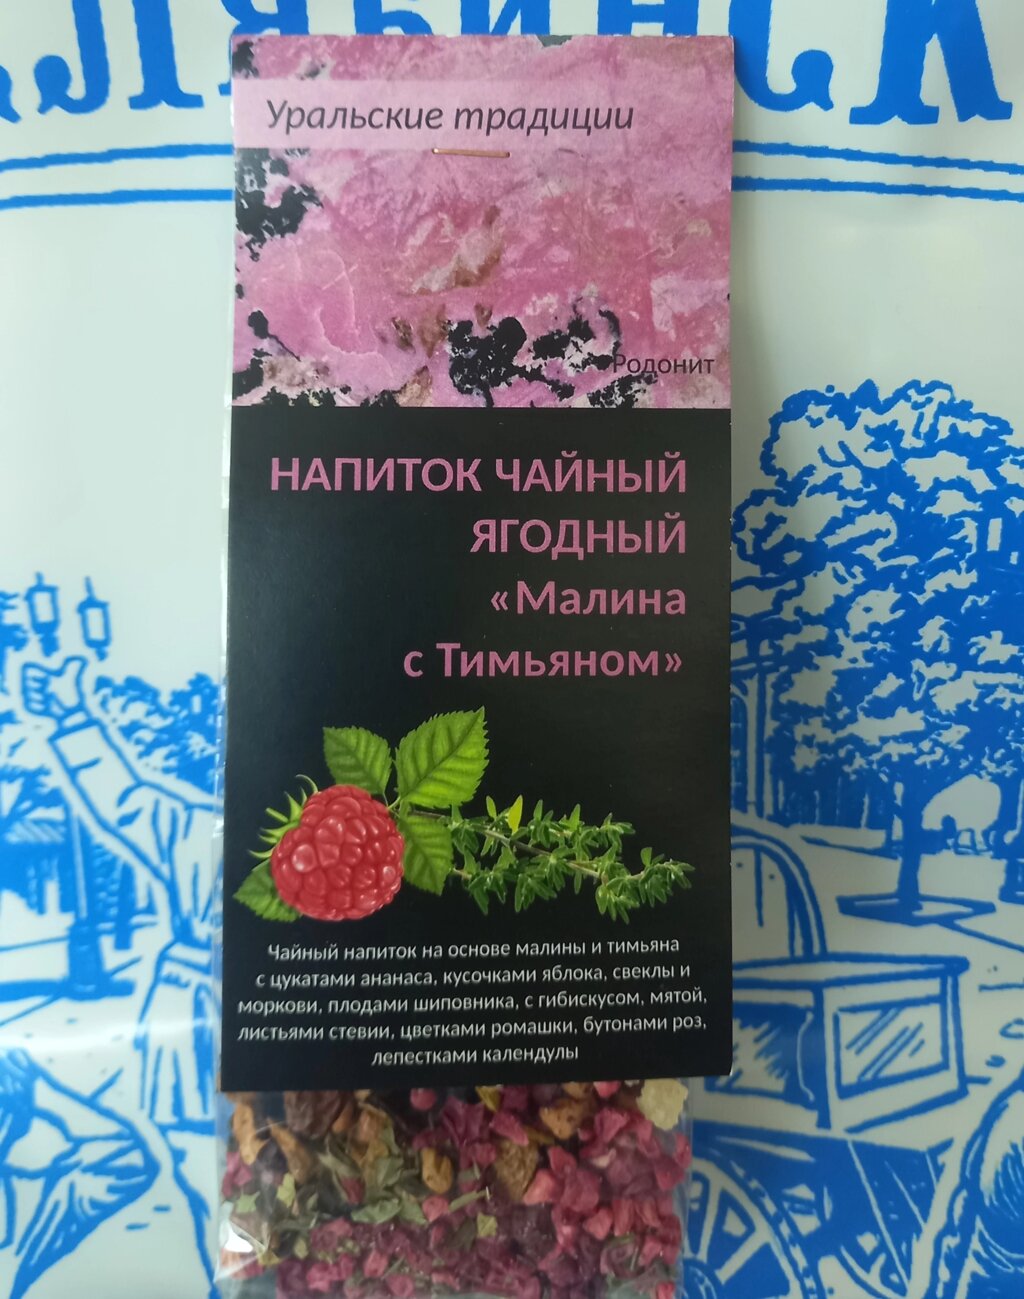 Напиток чайный ягодный «Малина с тимьяном» (Родонит) от компании Магазин сувениров и подарков "Особый Случай" в Челябинске - фото 1